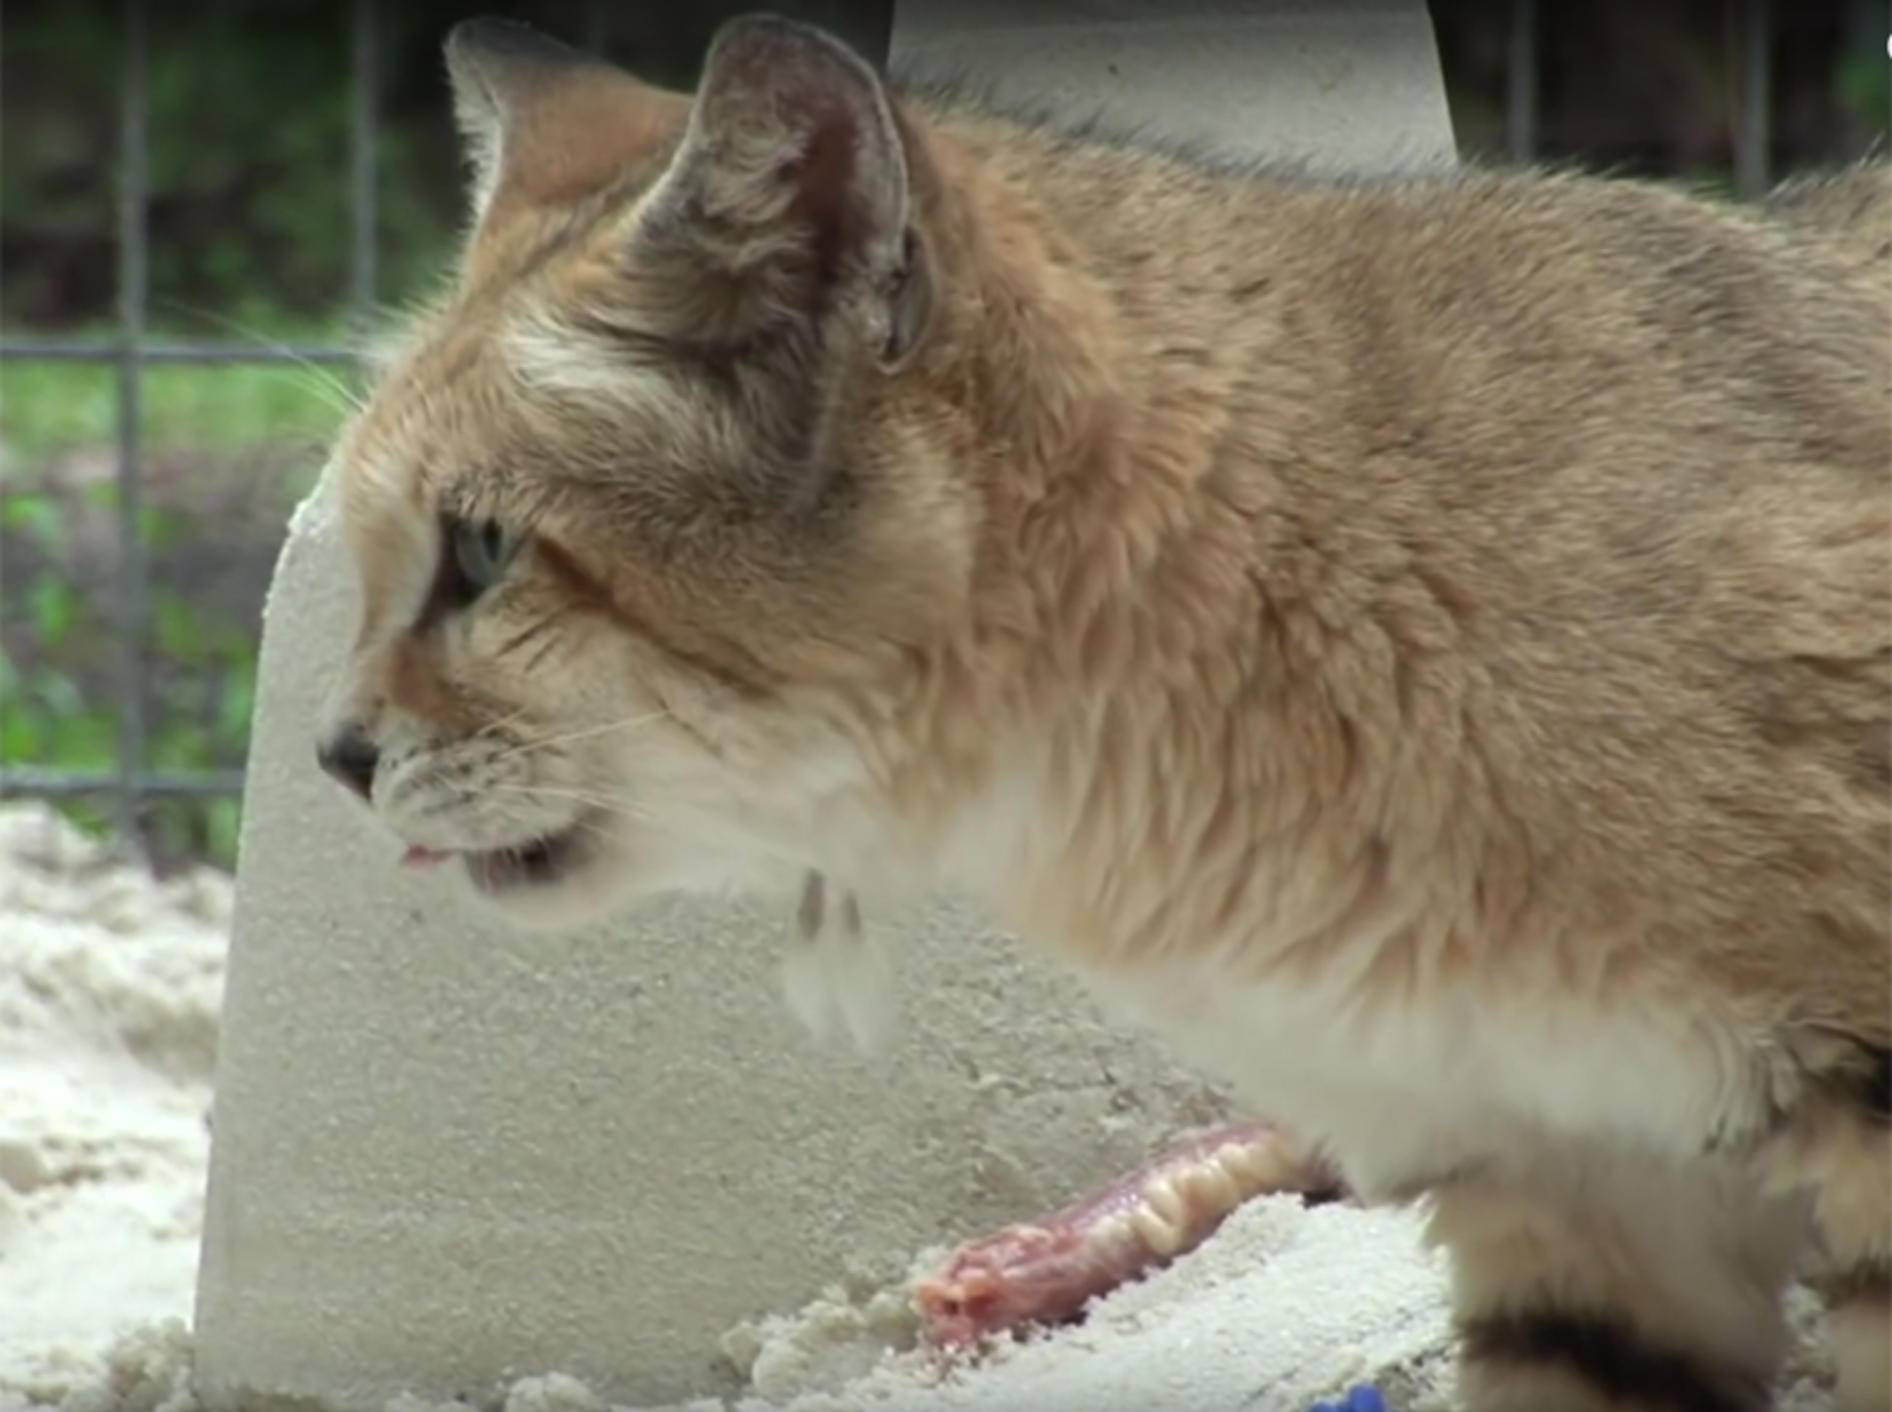 Sandkatzen feiern Geburtstag mit Fleischtorte und Sandburg – YouTube / Big Cat Rescue